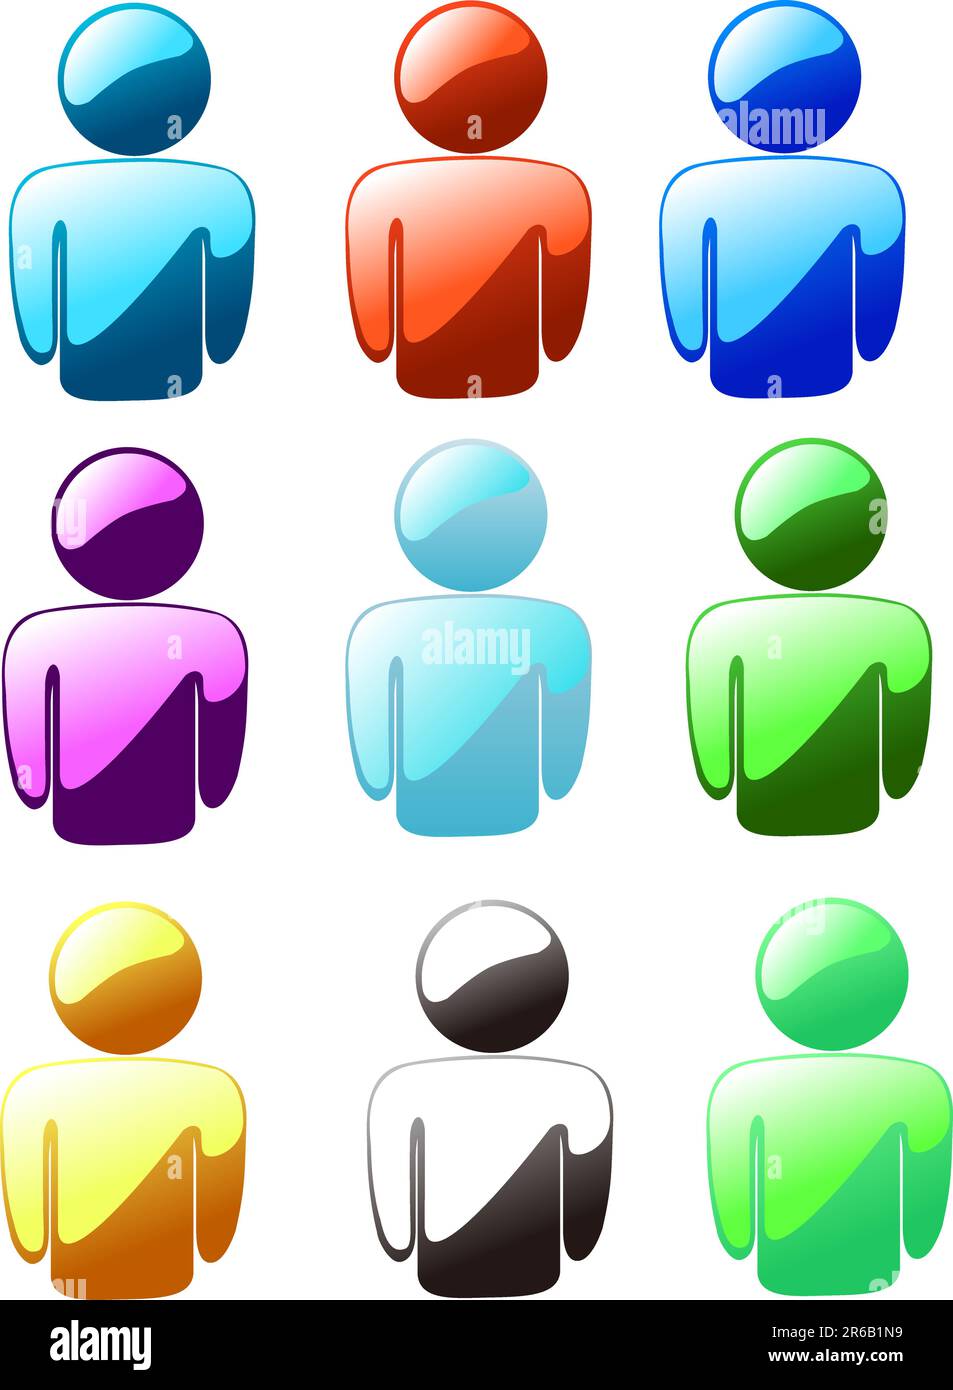 icône utilisateur sur fond blanc Illustration de Vecteur